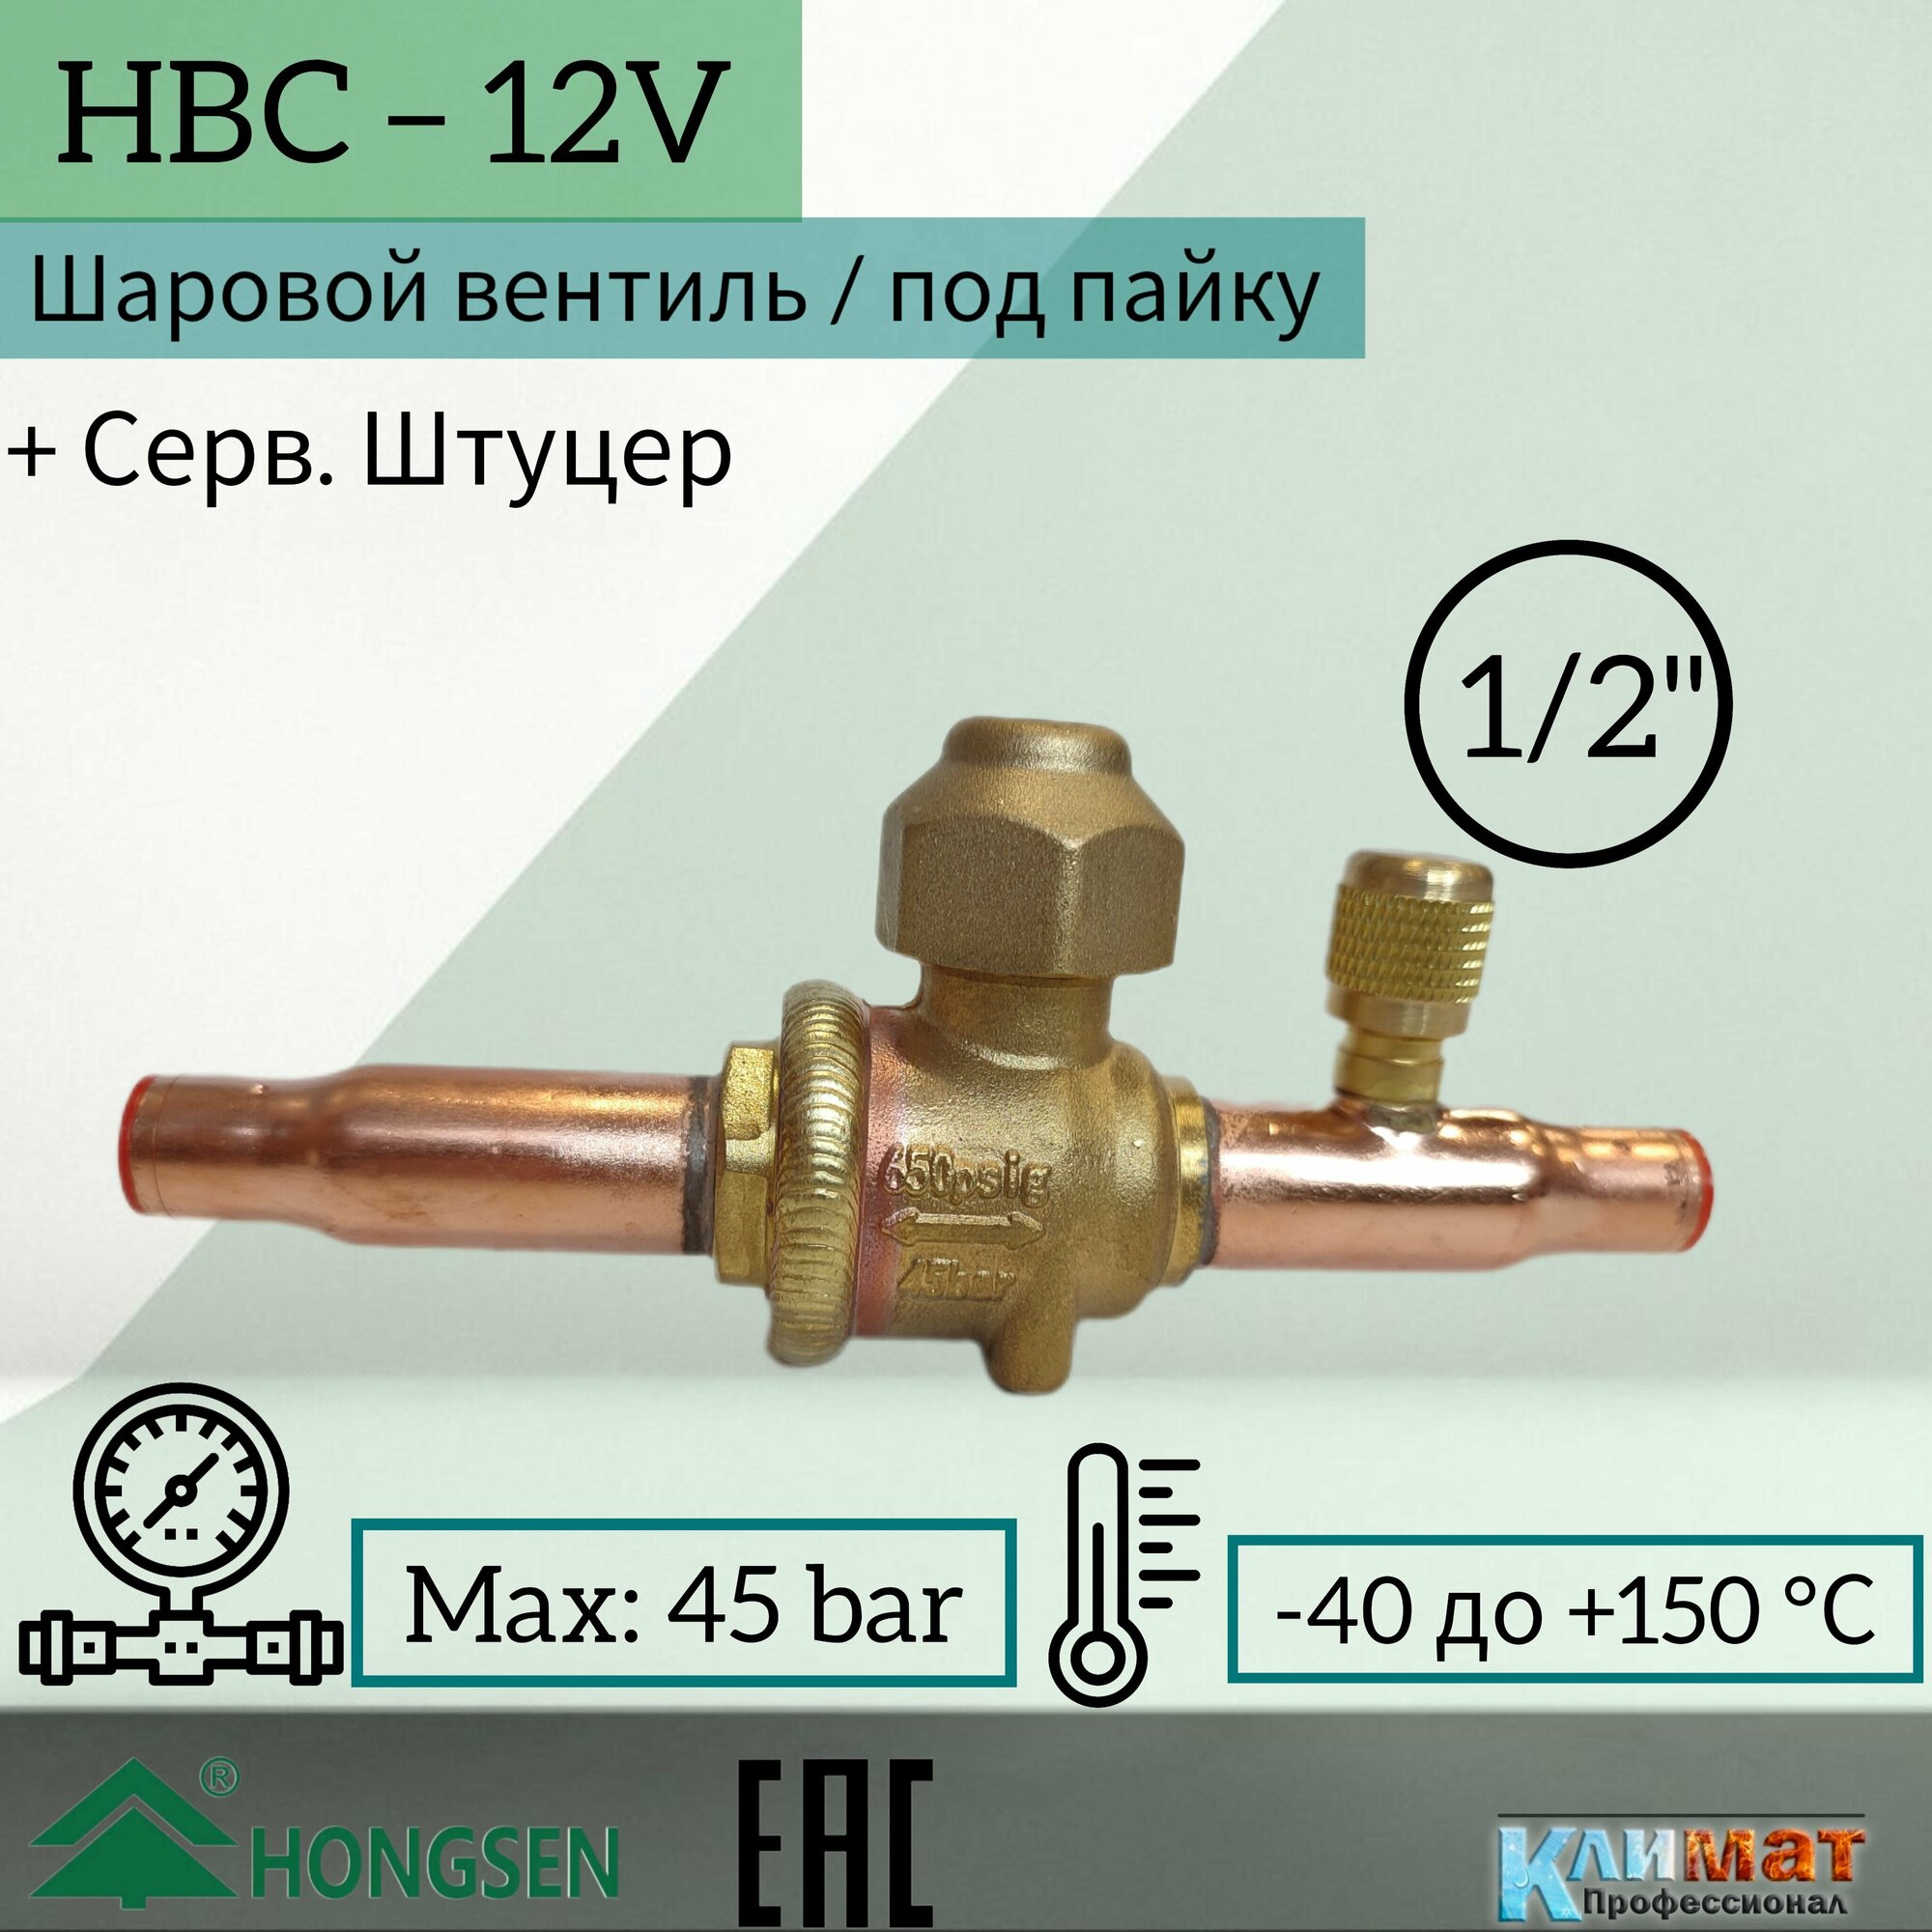 Шаровый вентиль Hongsen HBC-12V, 1/2, пайка, серв. штуцер